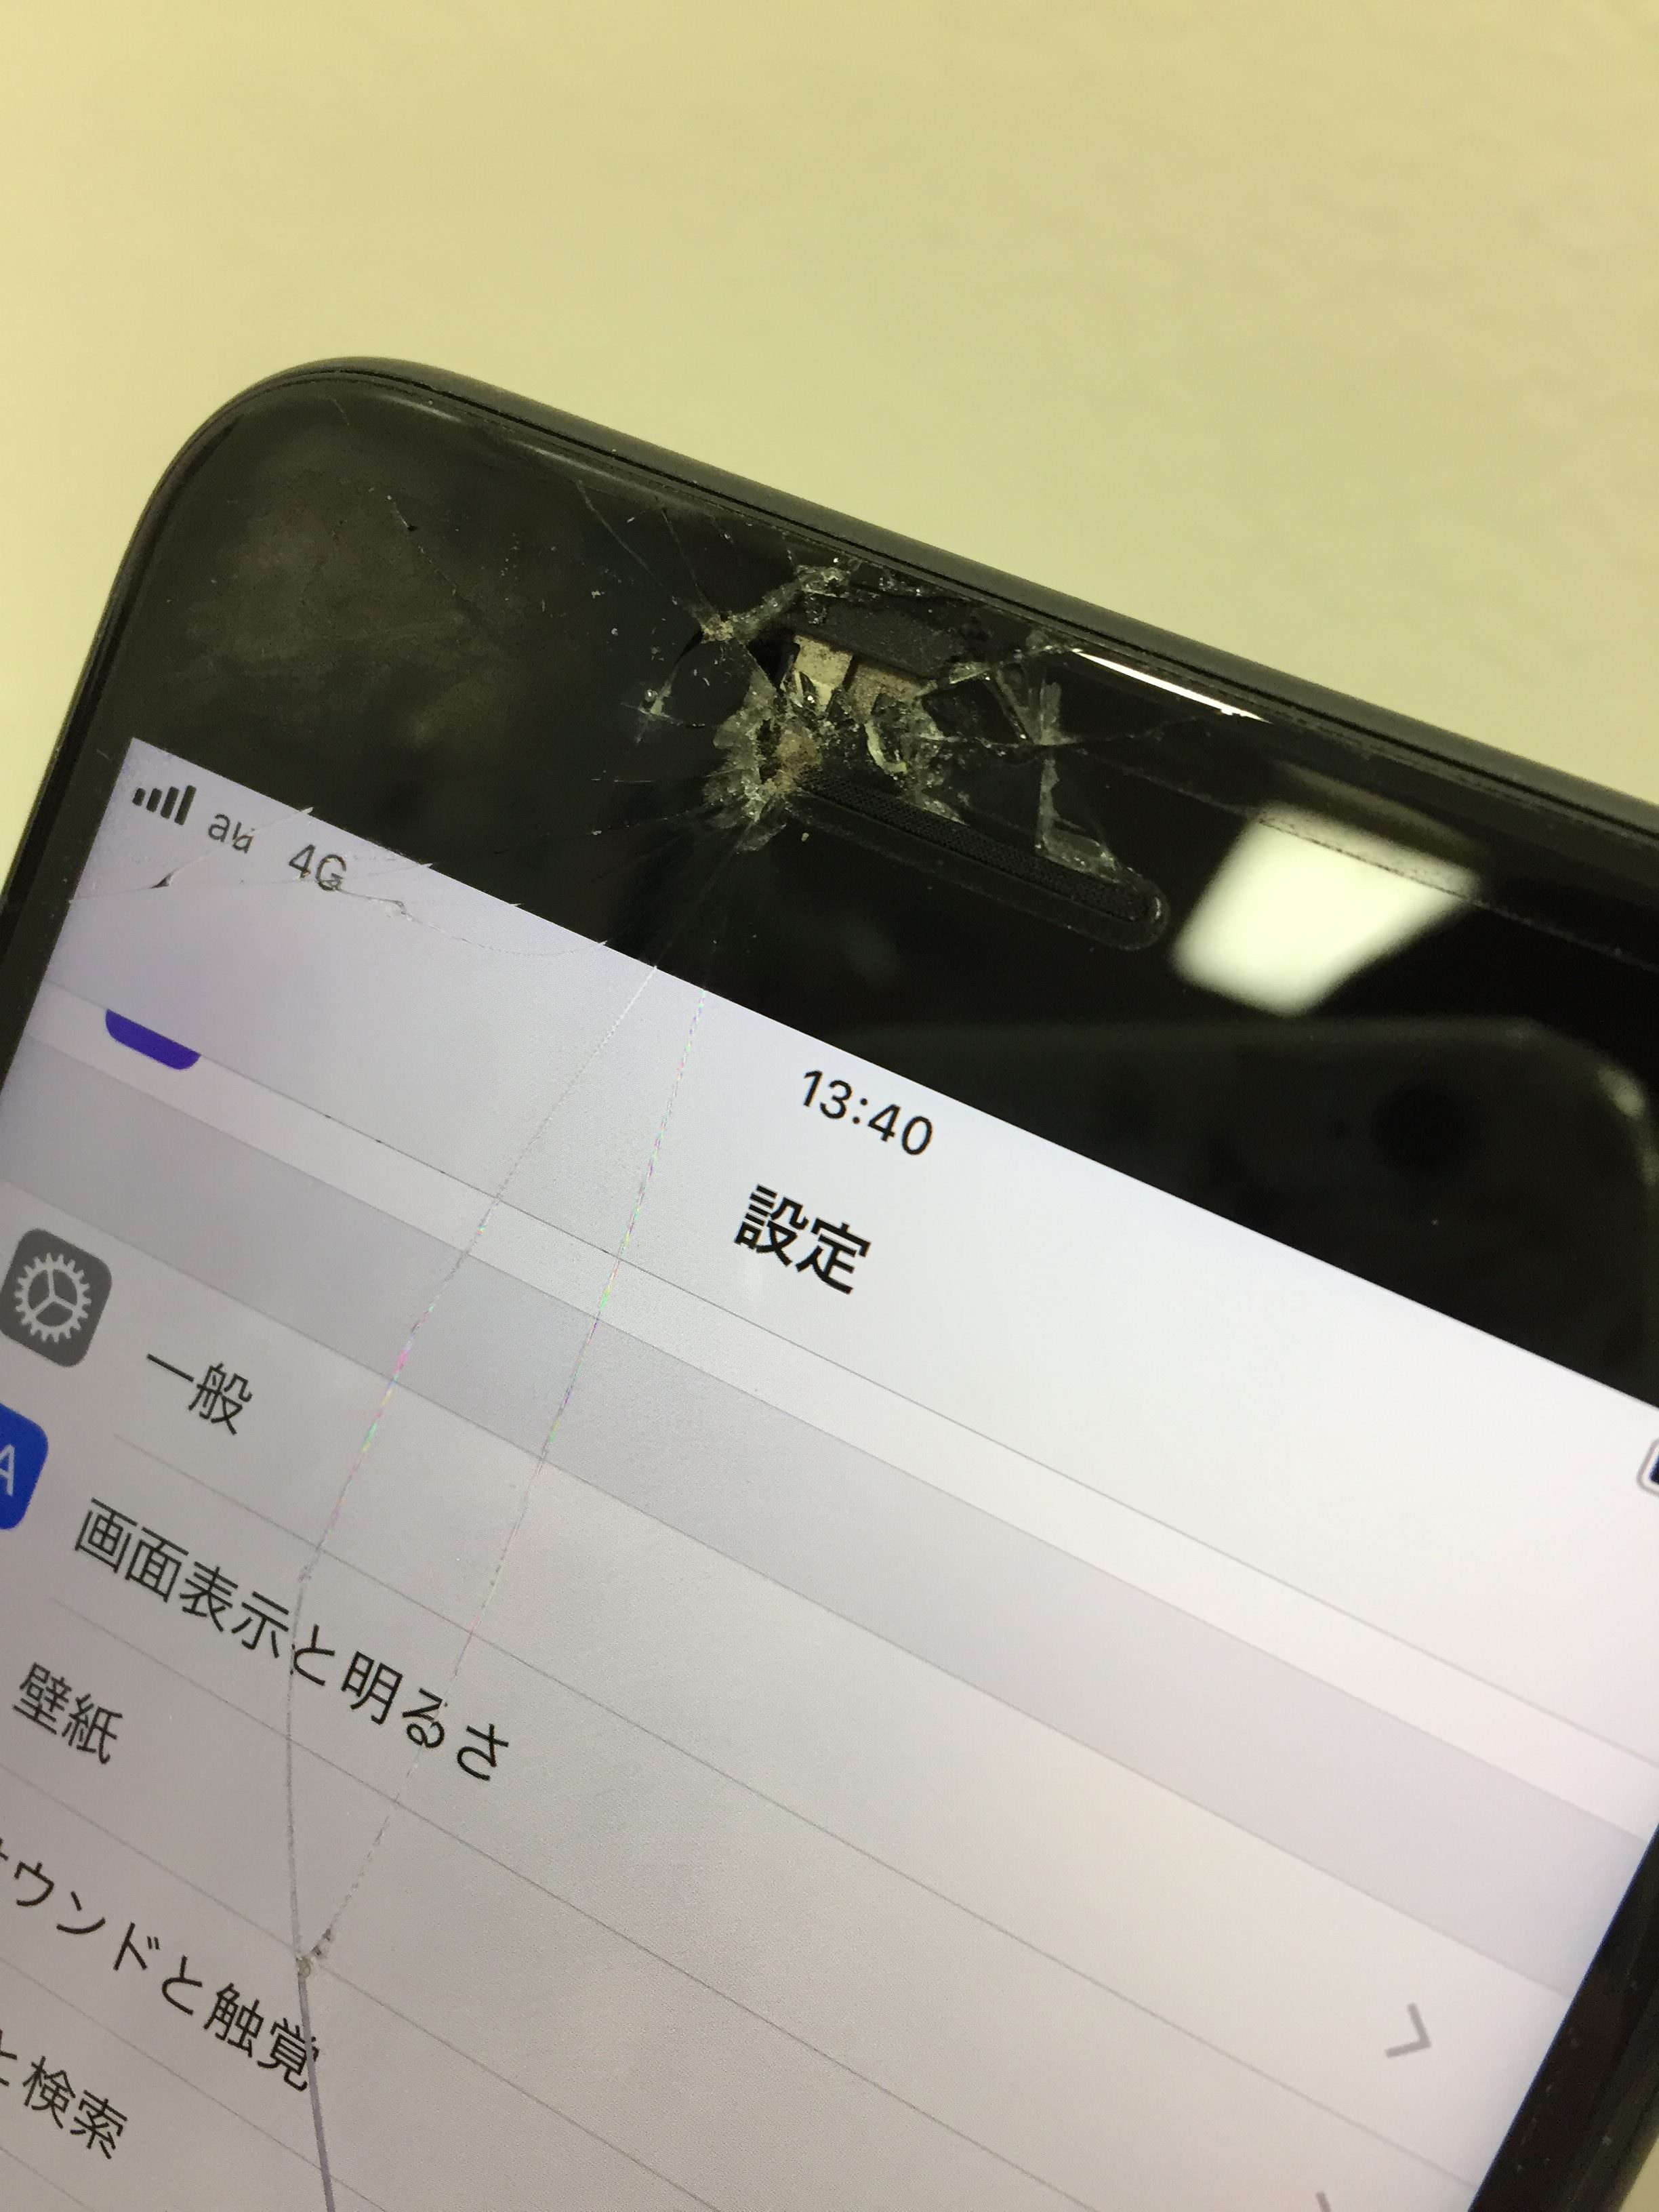 アイフォン修理 京都 Iphoneは画面が割れるとインカメの写りが白く曇る スマホスピタル